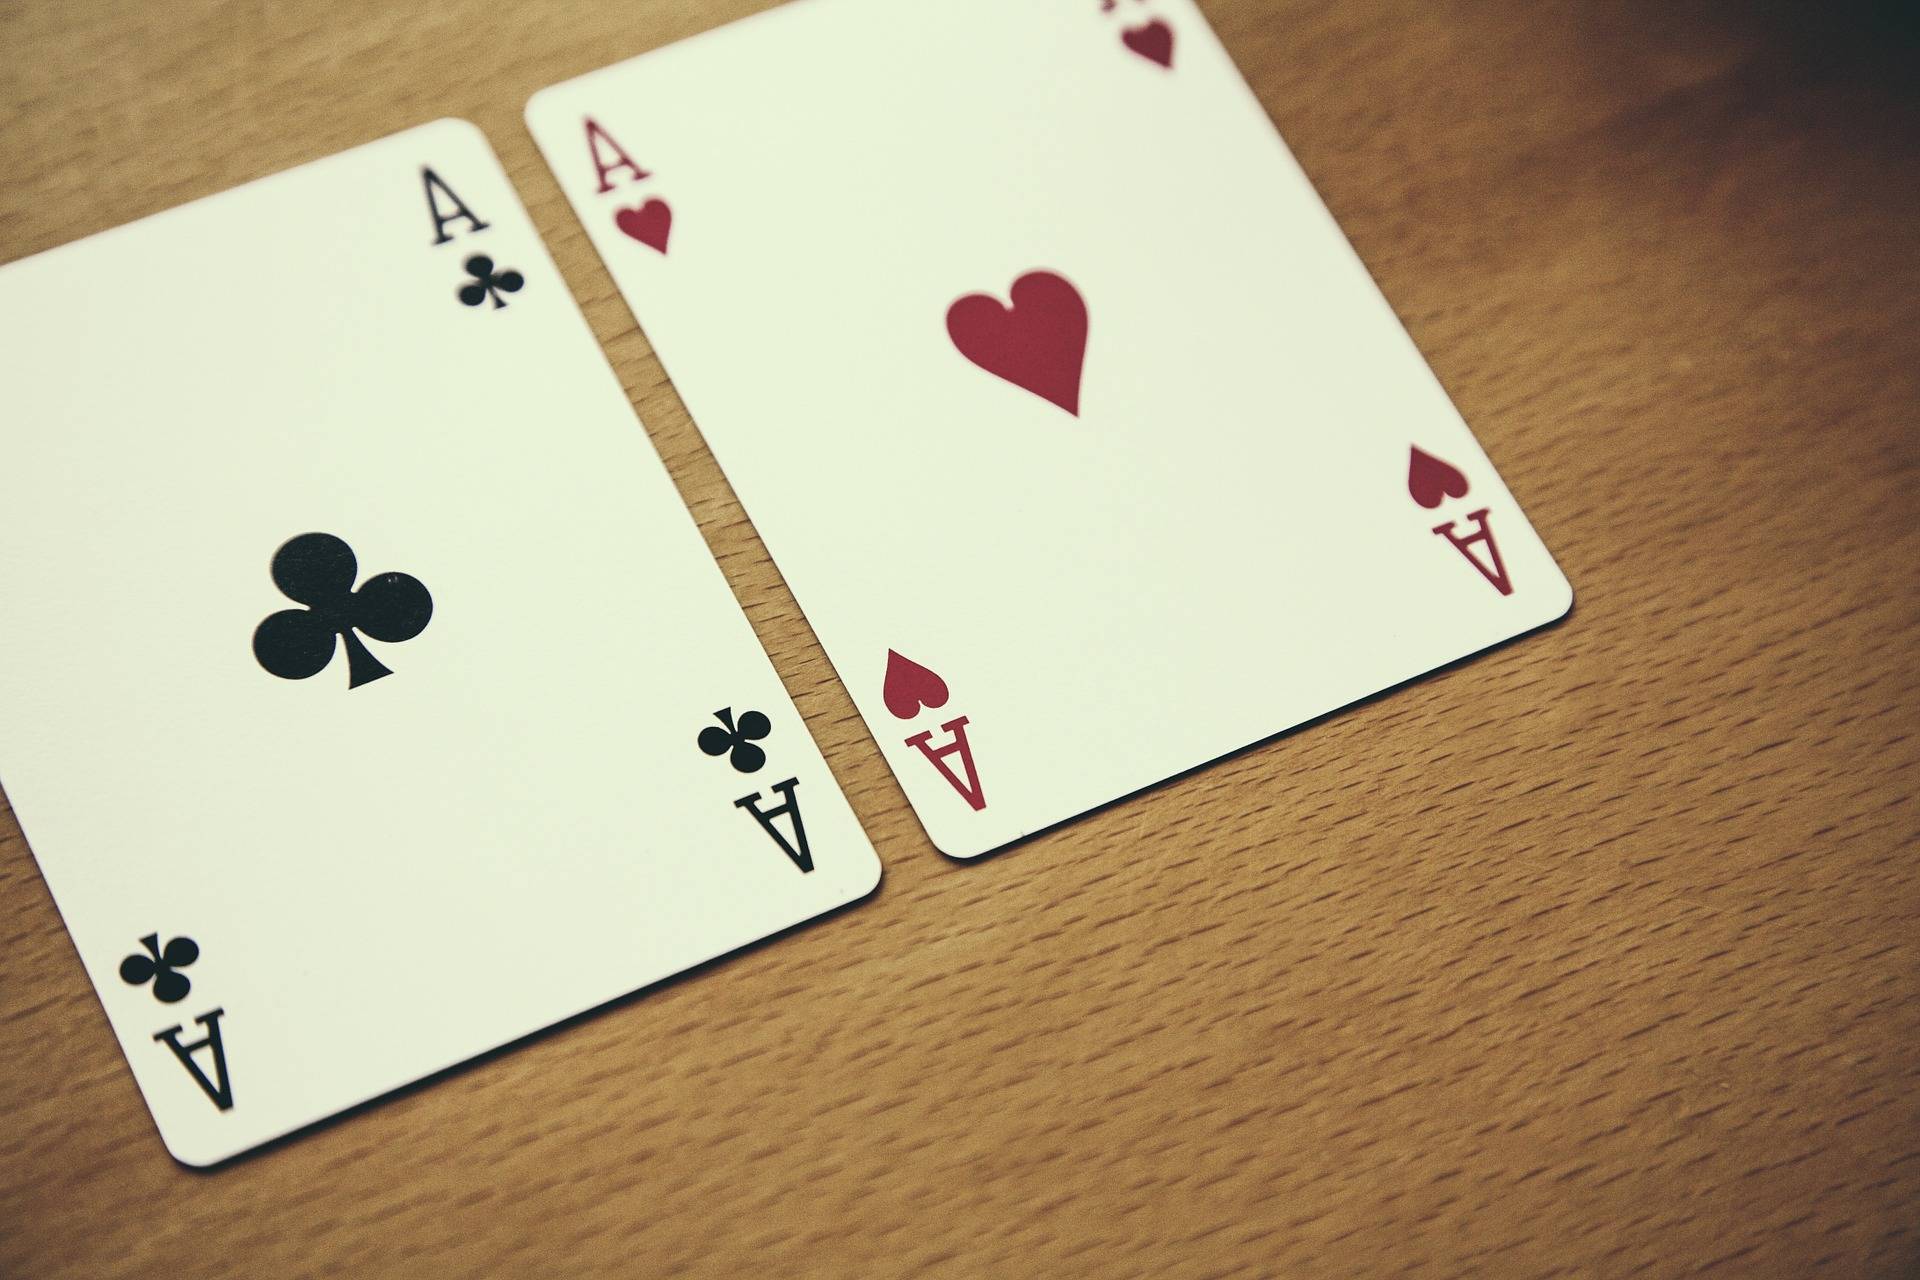 Blick auf zwei Spielkarten, die am Tisch liegen